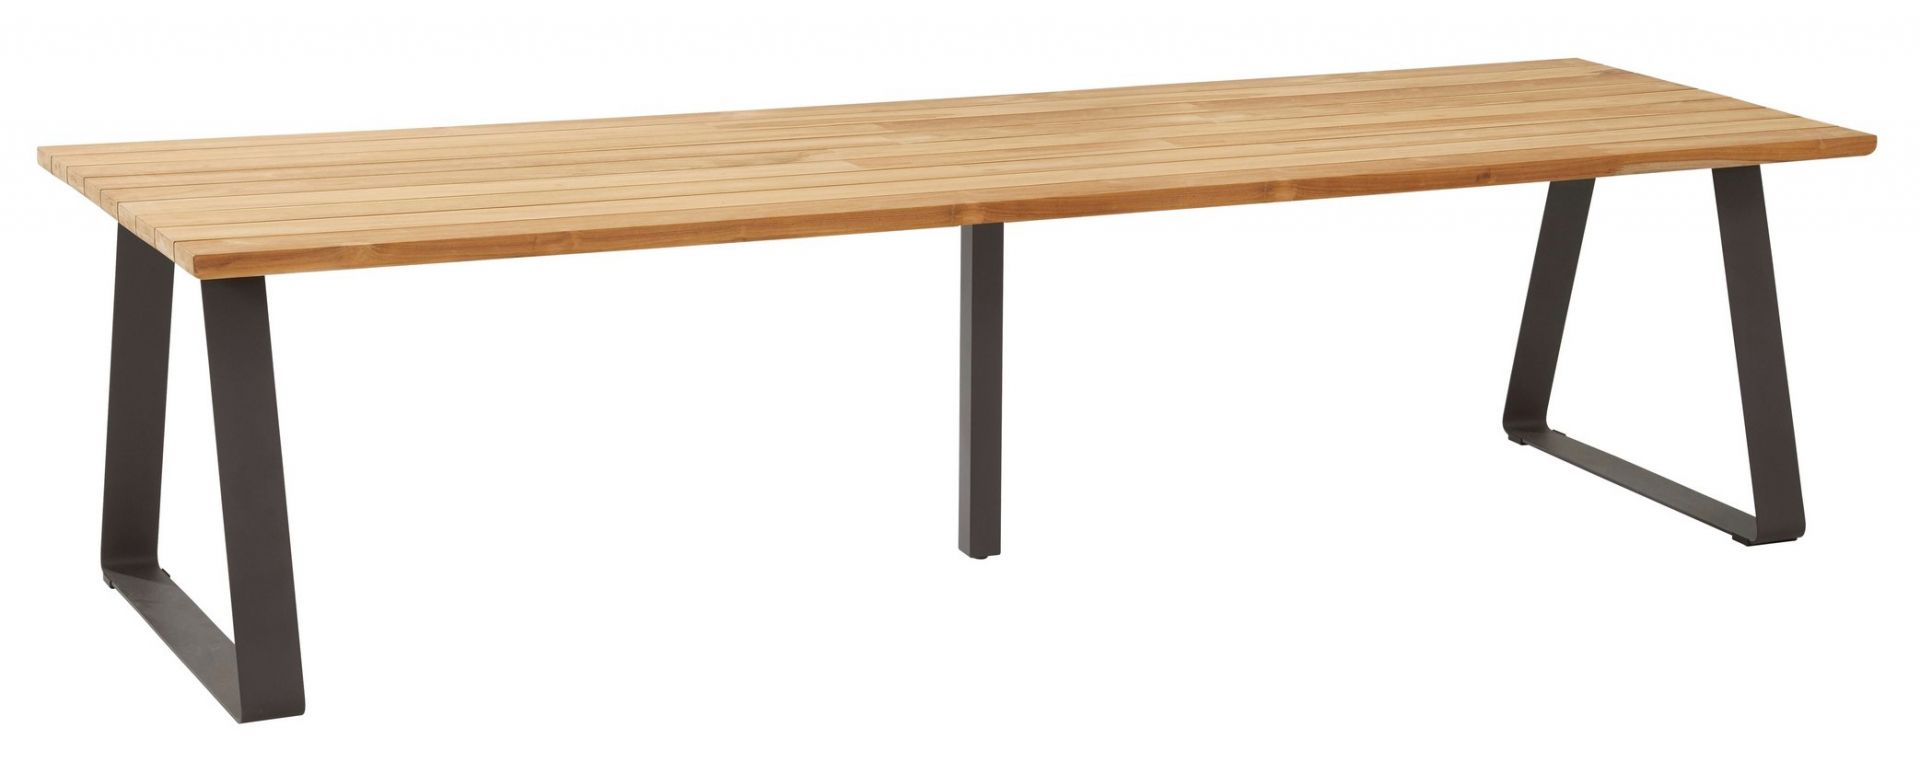 4Seasons Outdoor designové zahradní stoly Basso Table Rectangle (300 x 100 cm) - DESIGNPROPAGANDA